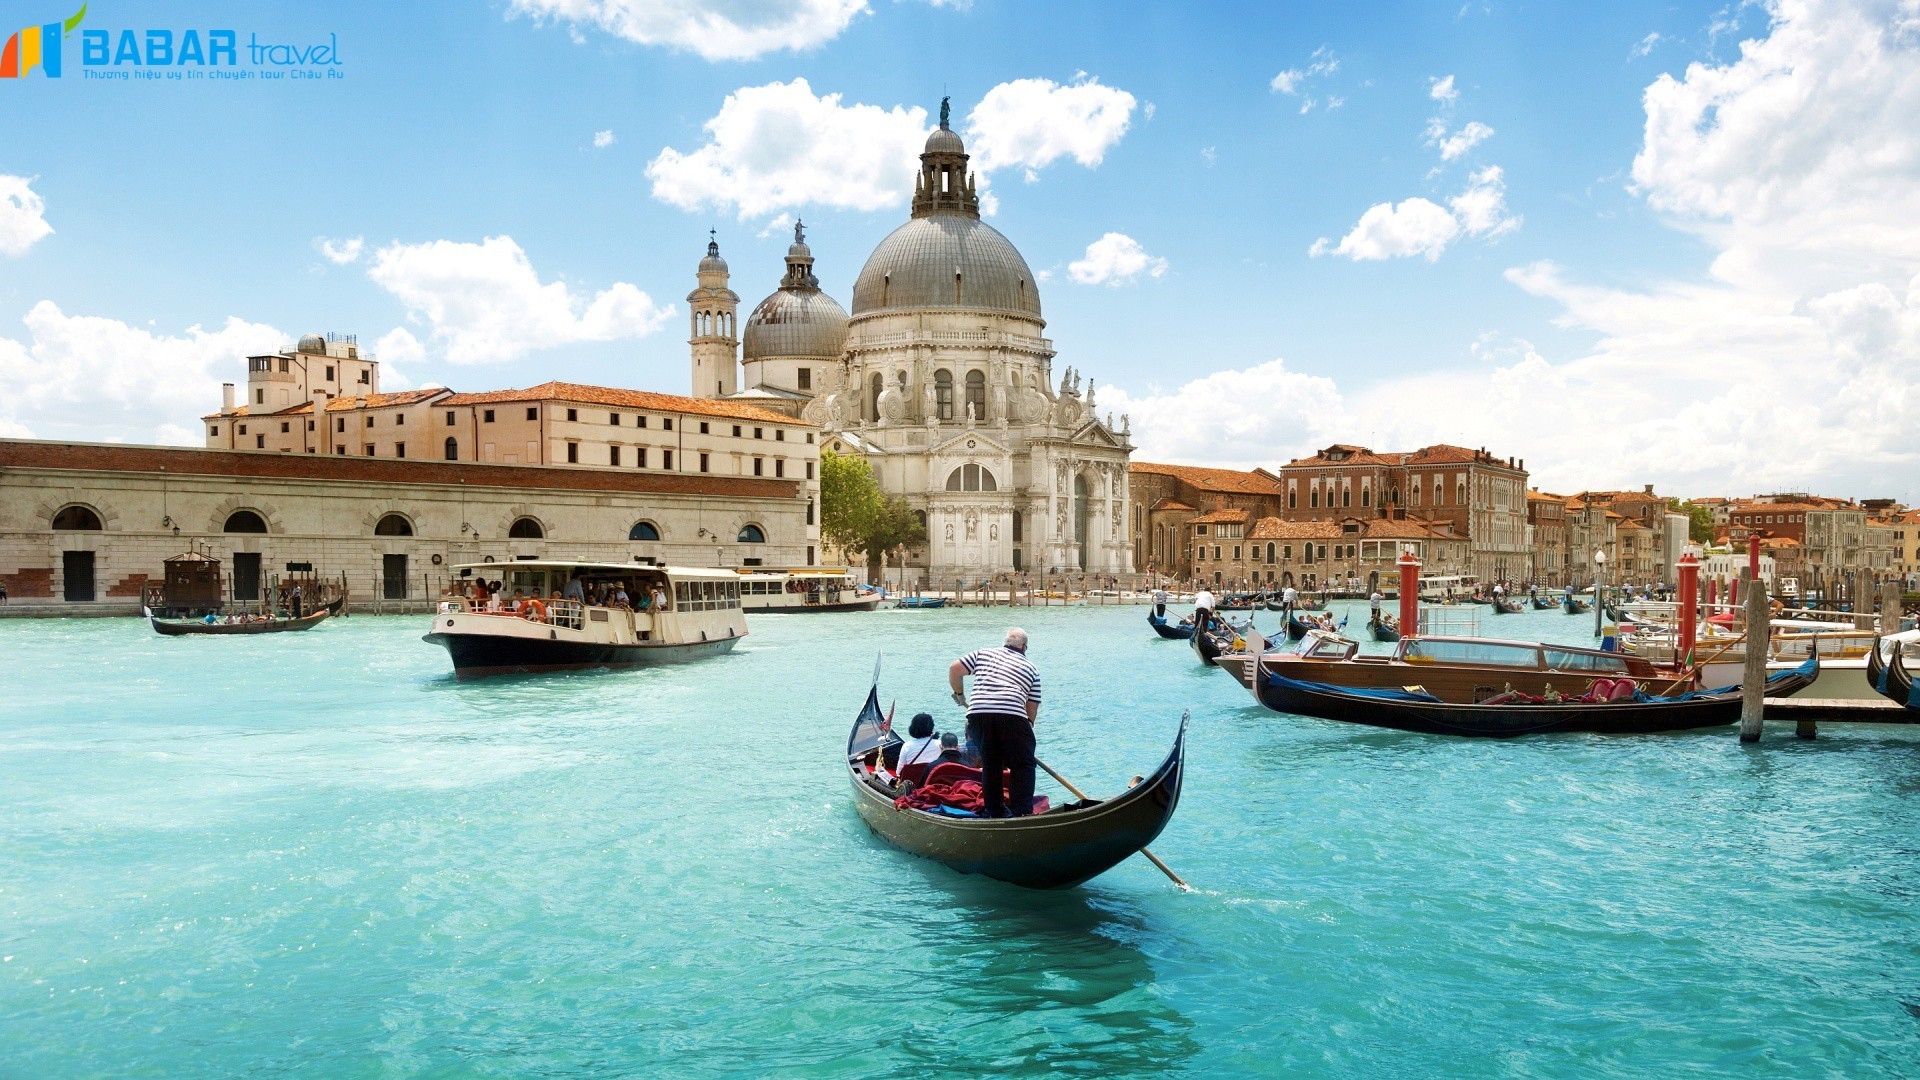 Cung điện Doge's Palace - dinh thự uy nghiêm, tráng lệ nhất Venice